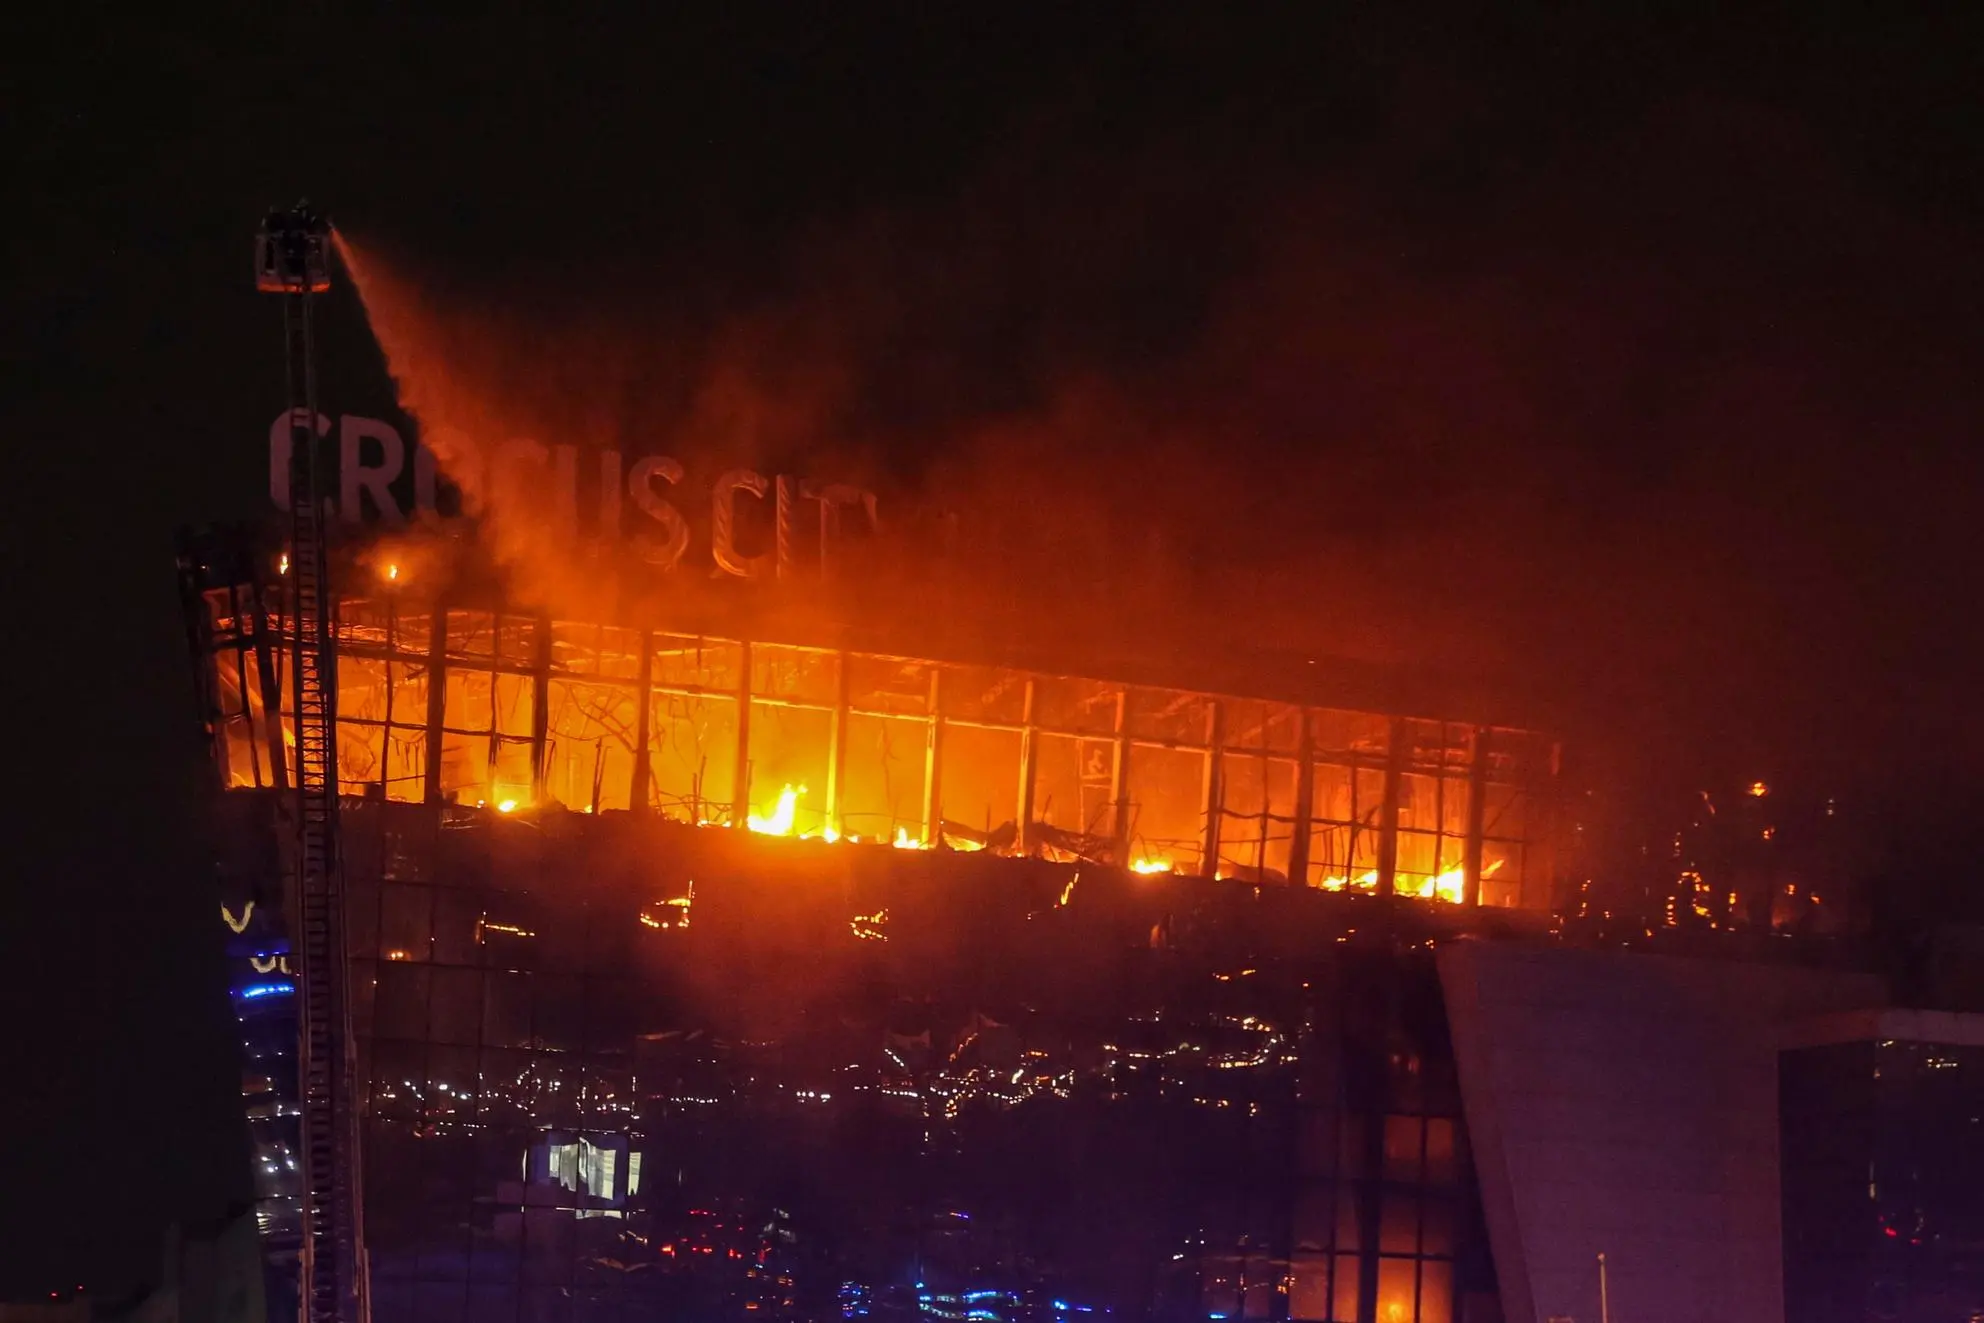 L'incendio che ha devastato la Crocus City dopo la strage